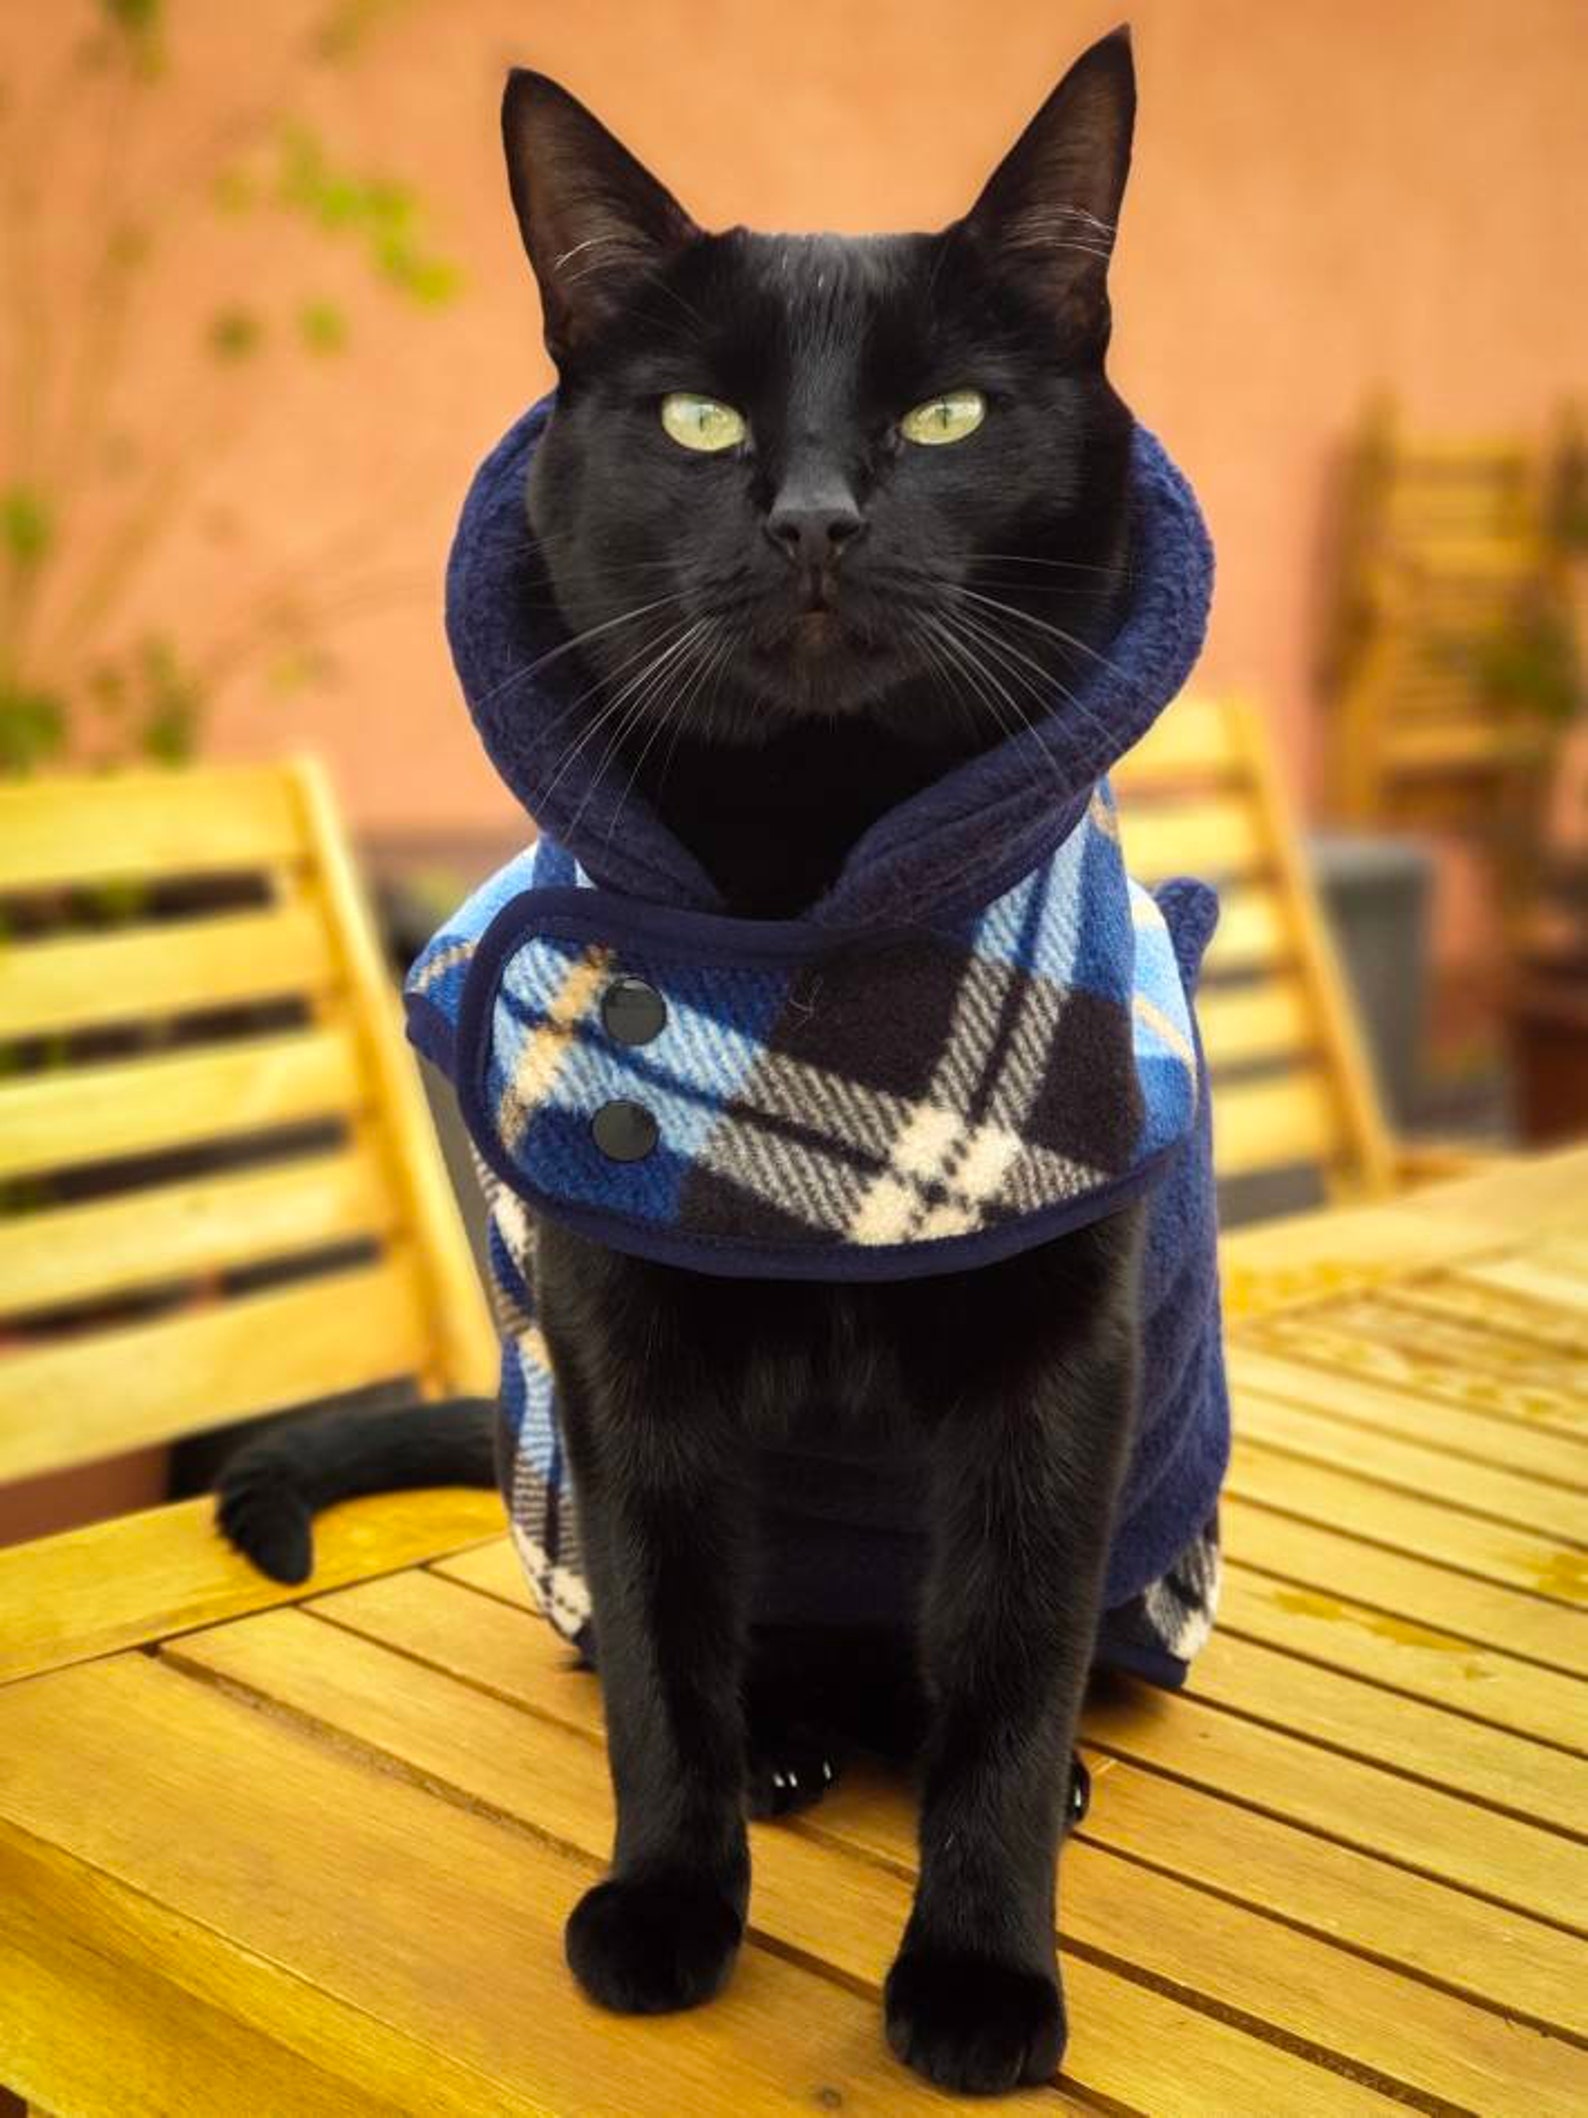 Cat warm vest DOUBLEFACE fleece jacket for cat | Etsy